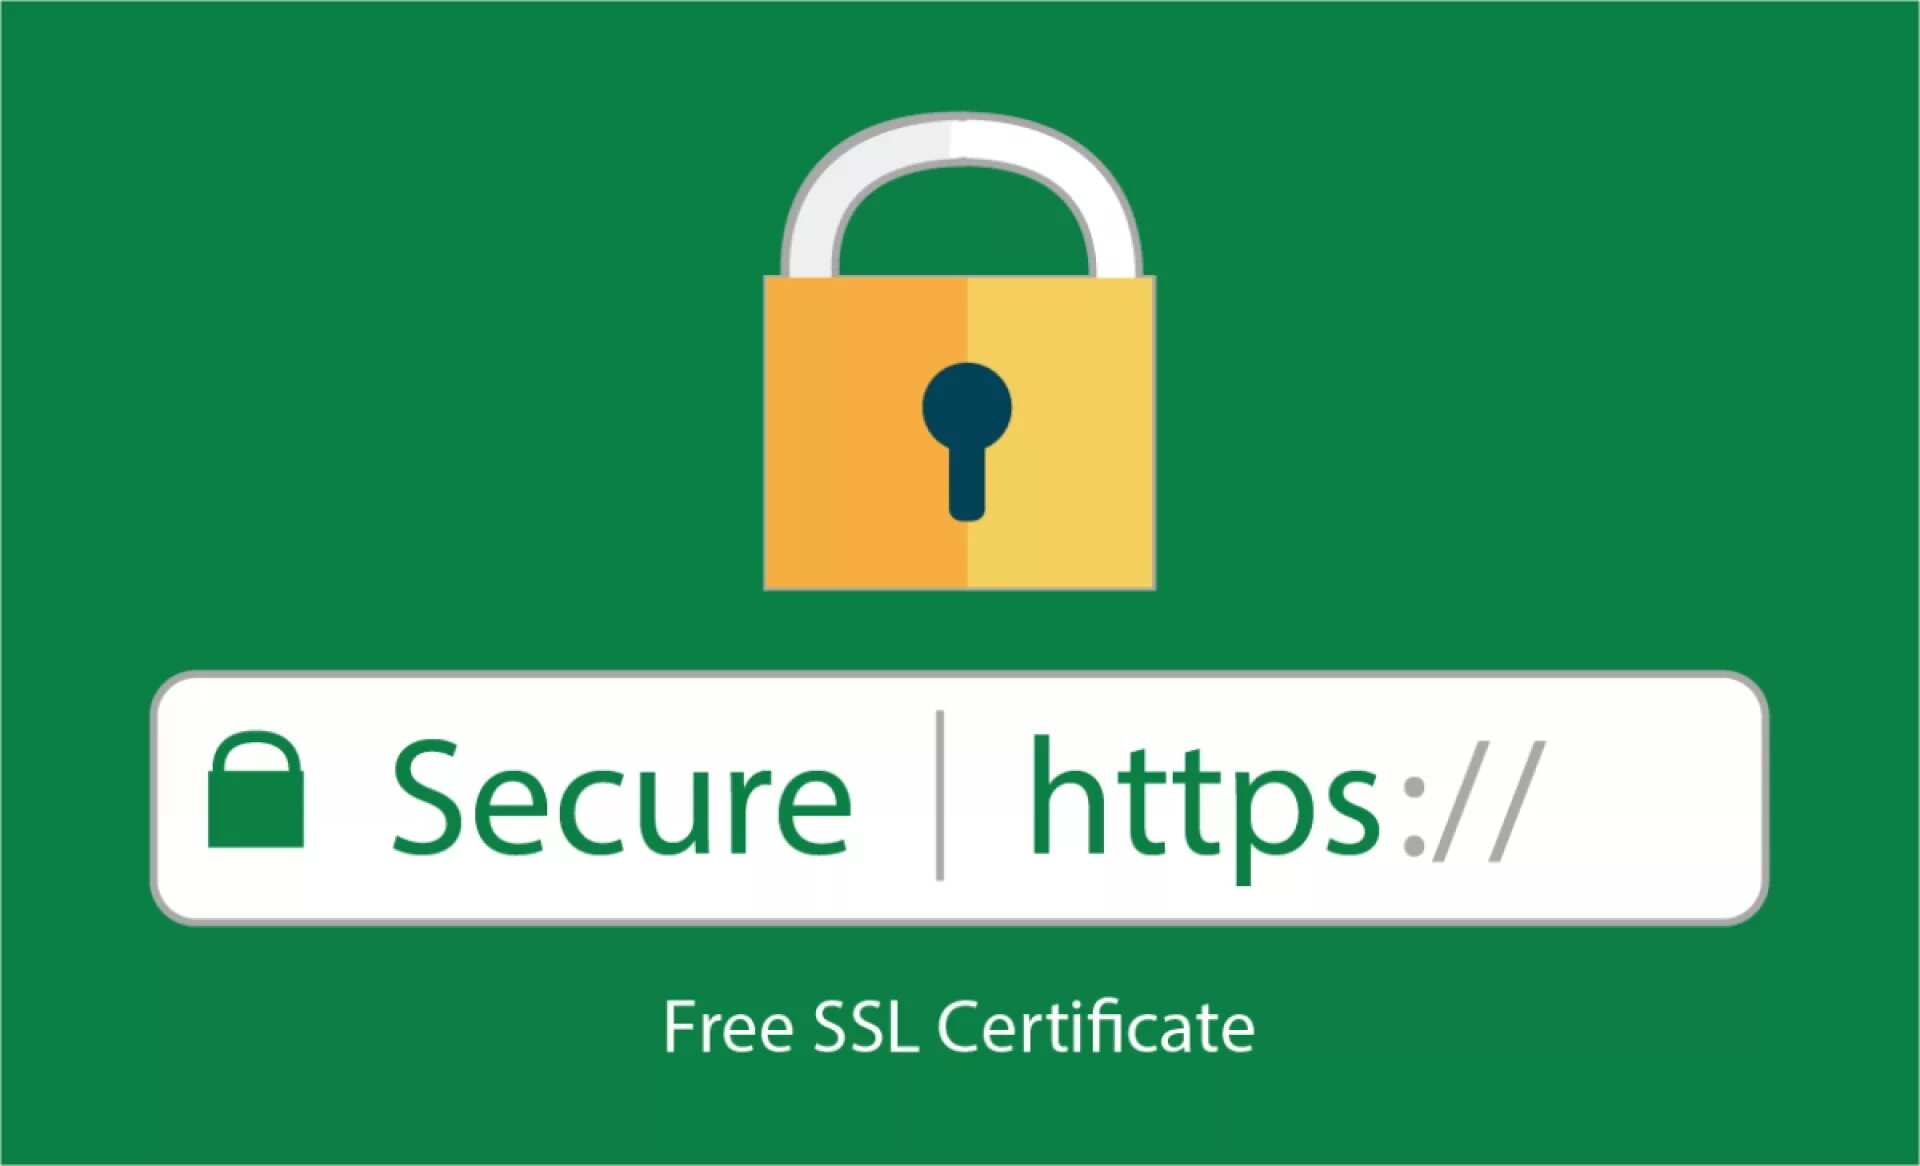 SSL Certificate. So secure.